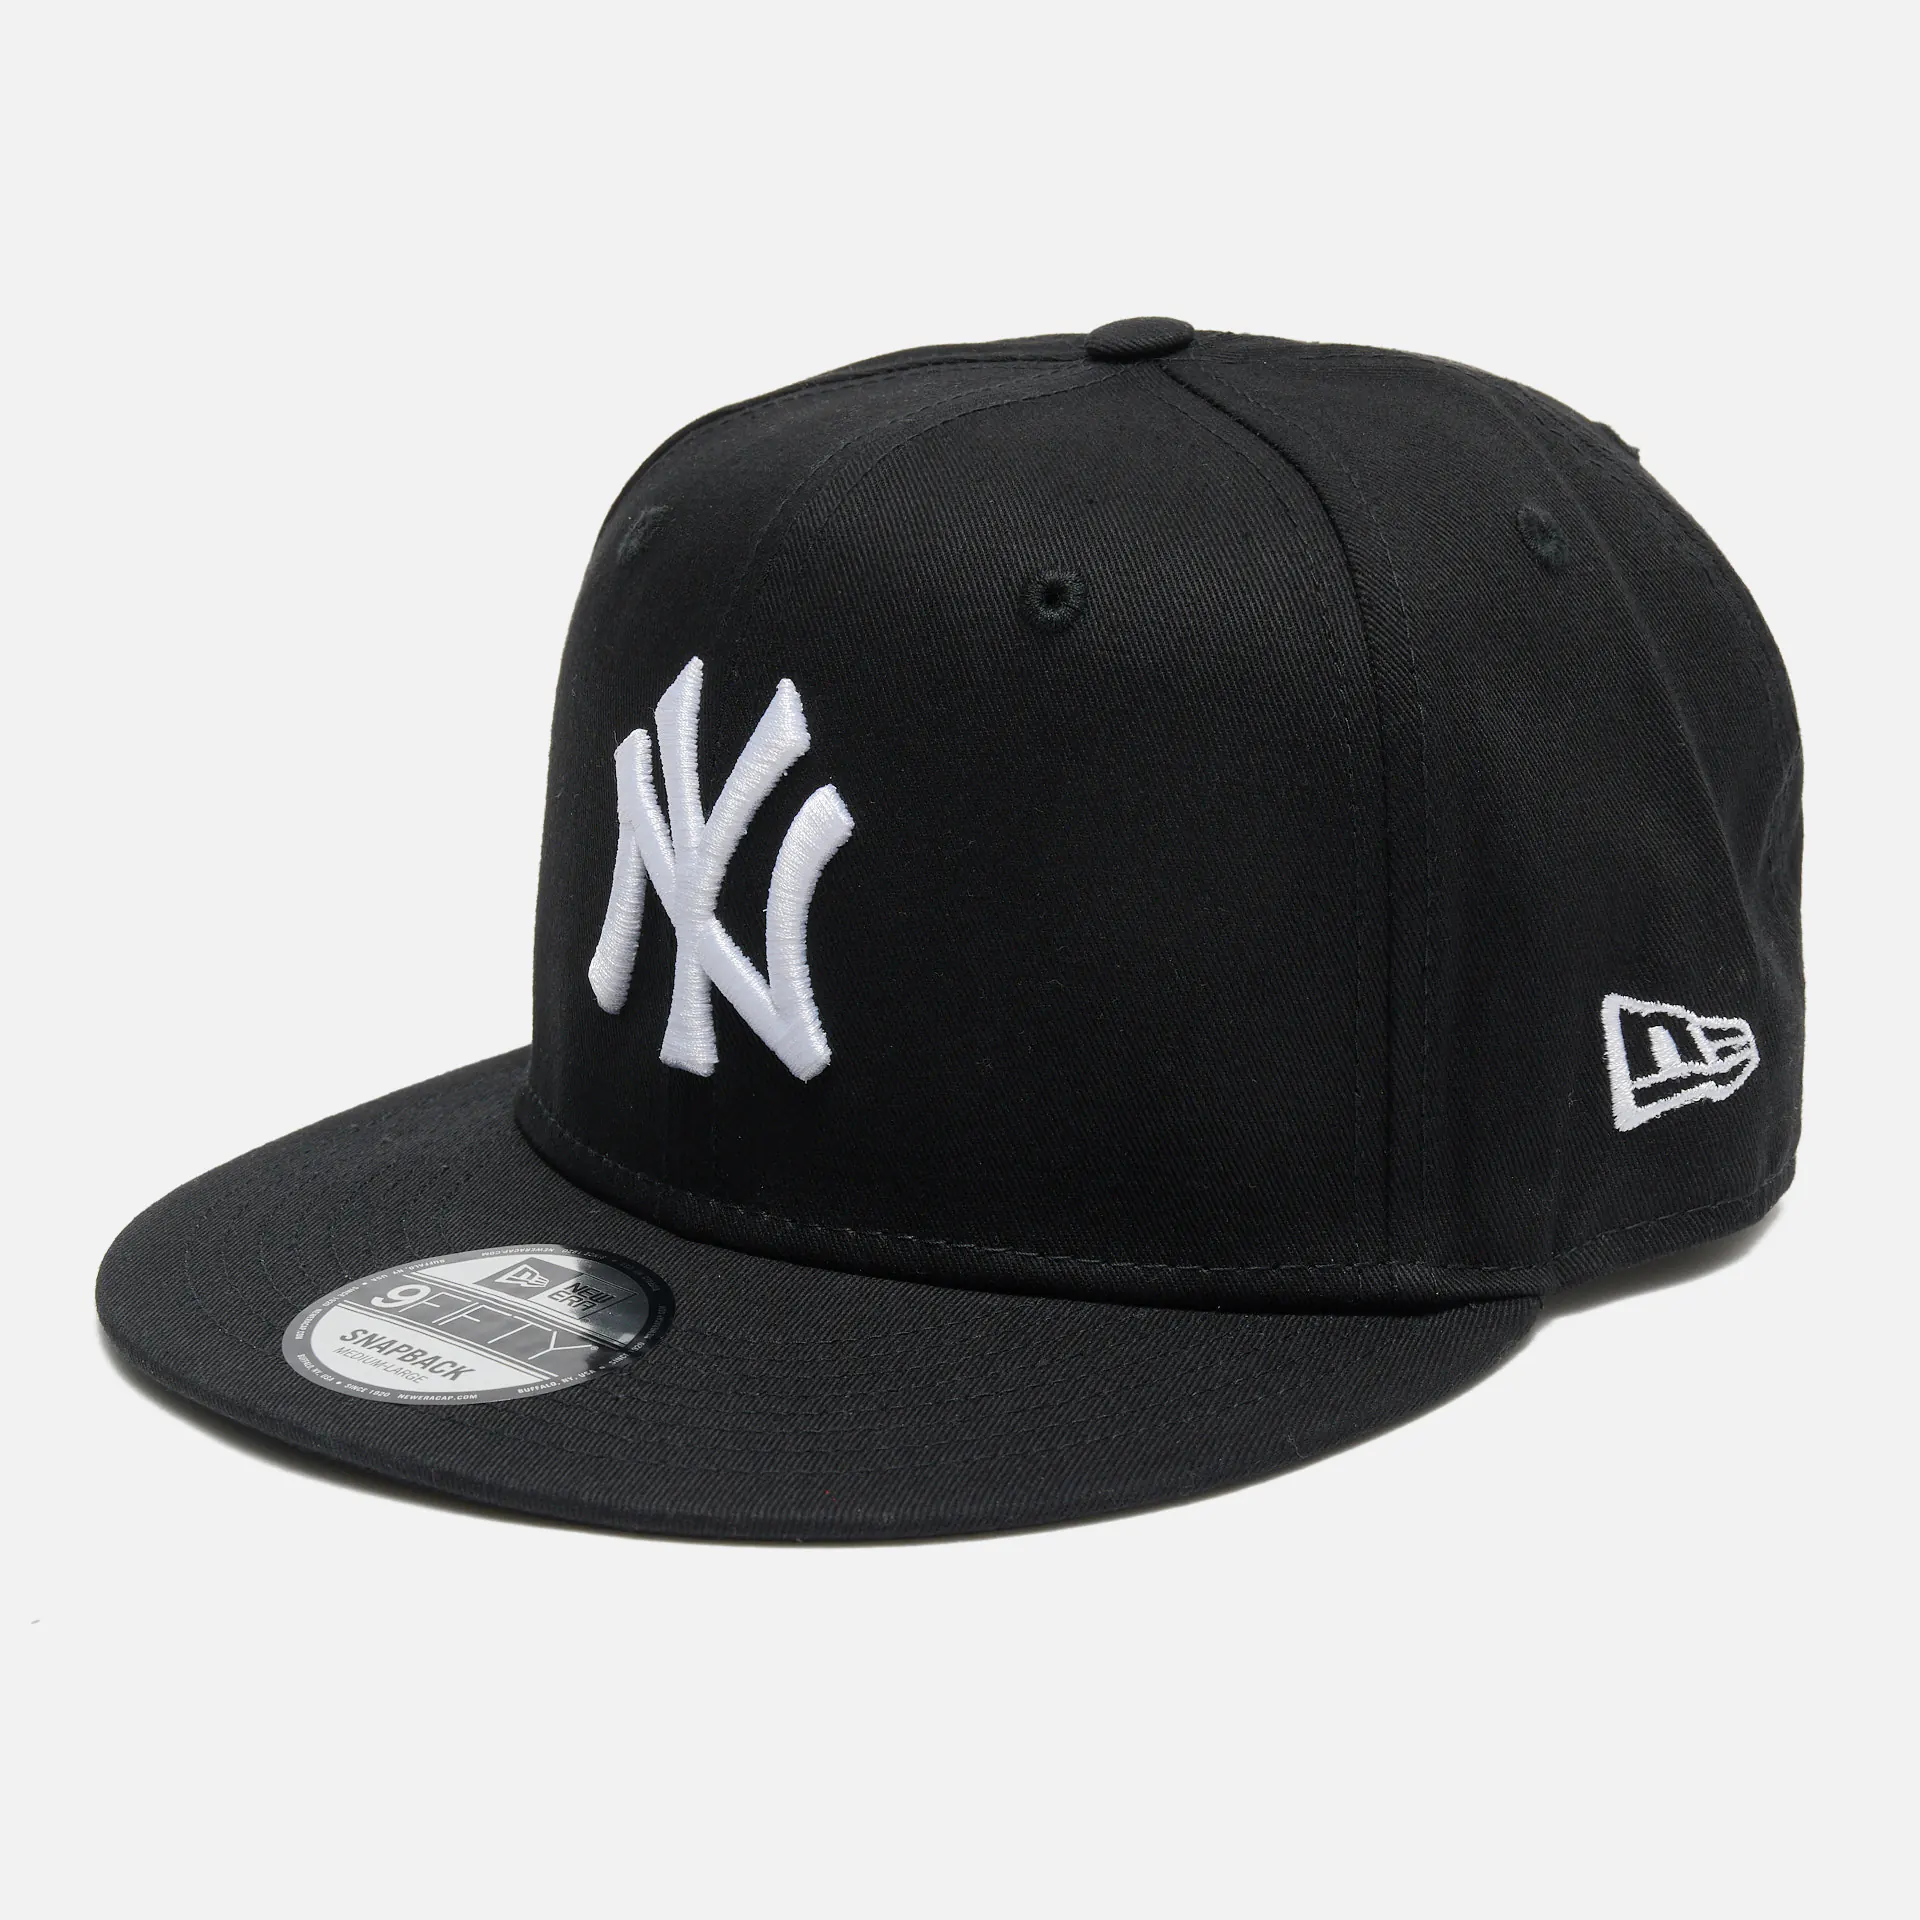 New Era MLB 9Fifty NY Yankees 9Fifty Snapback Cap Black/White